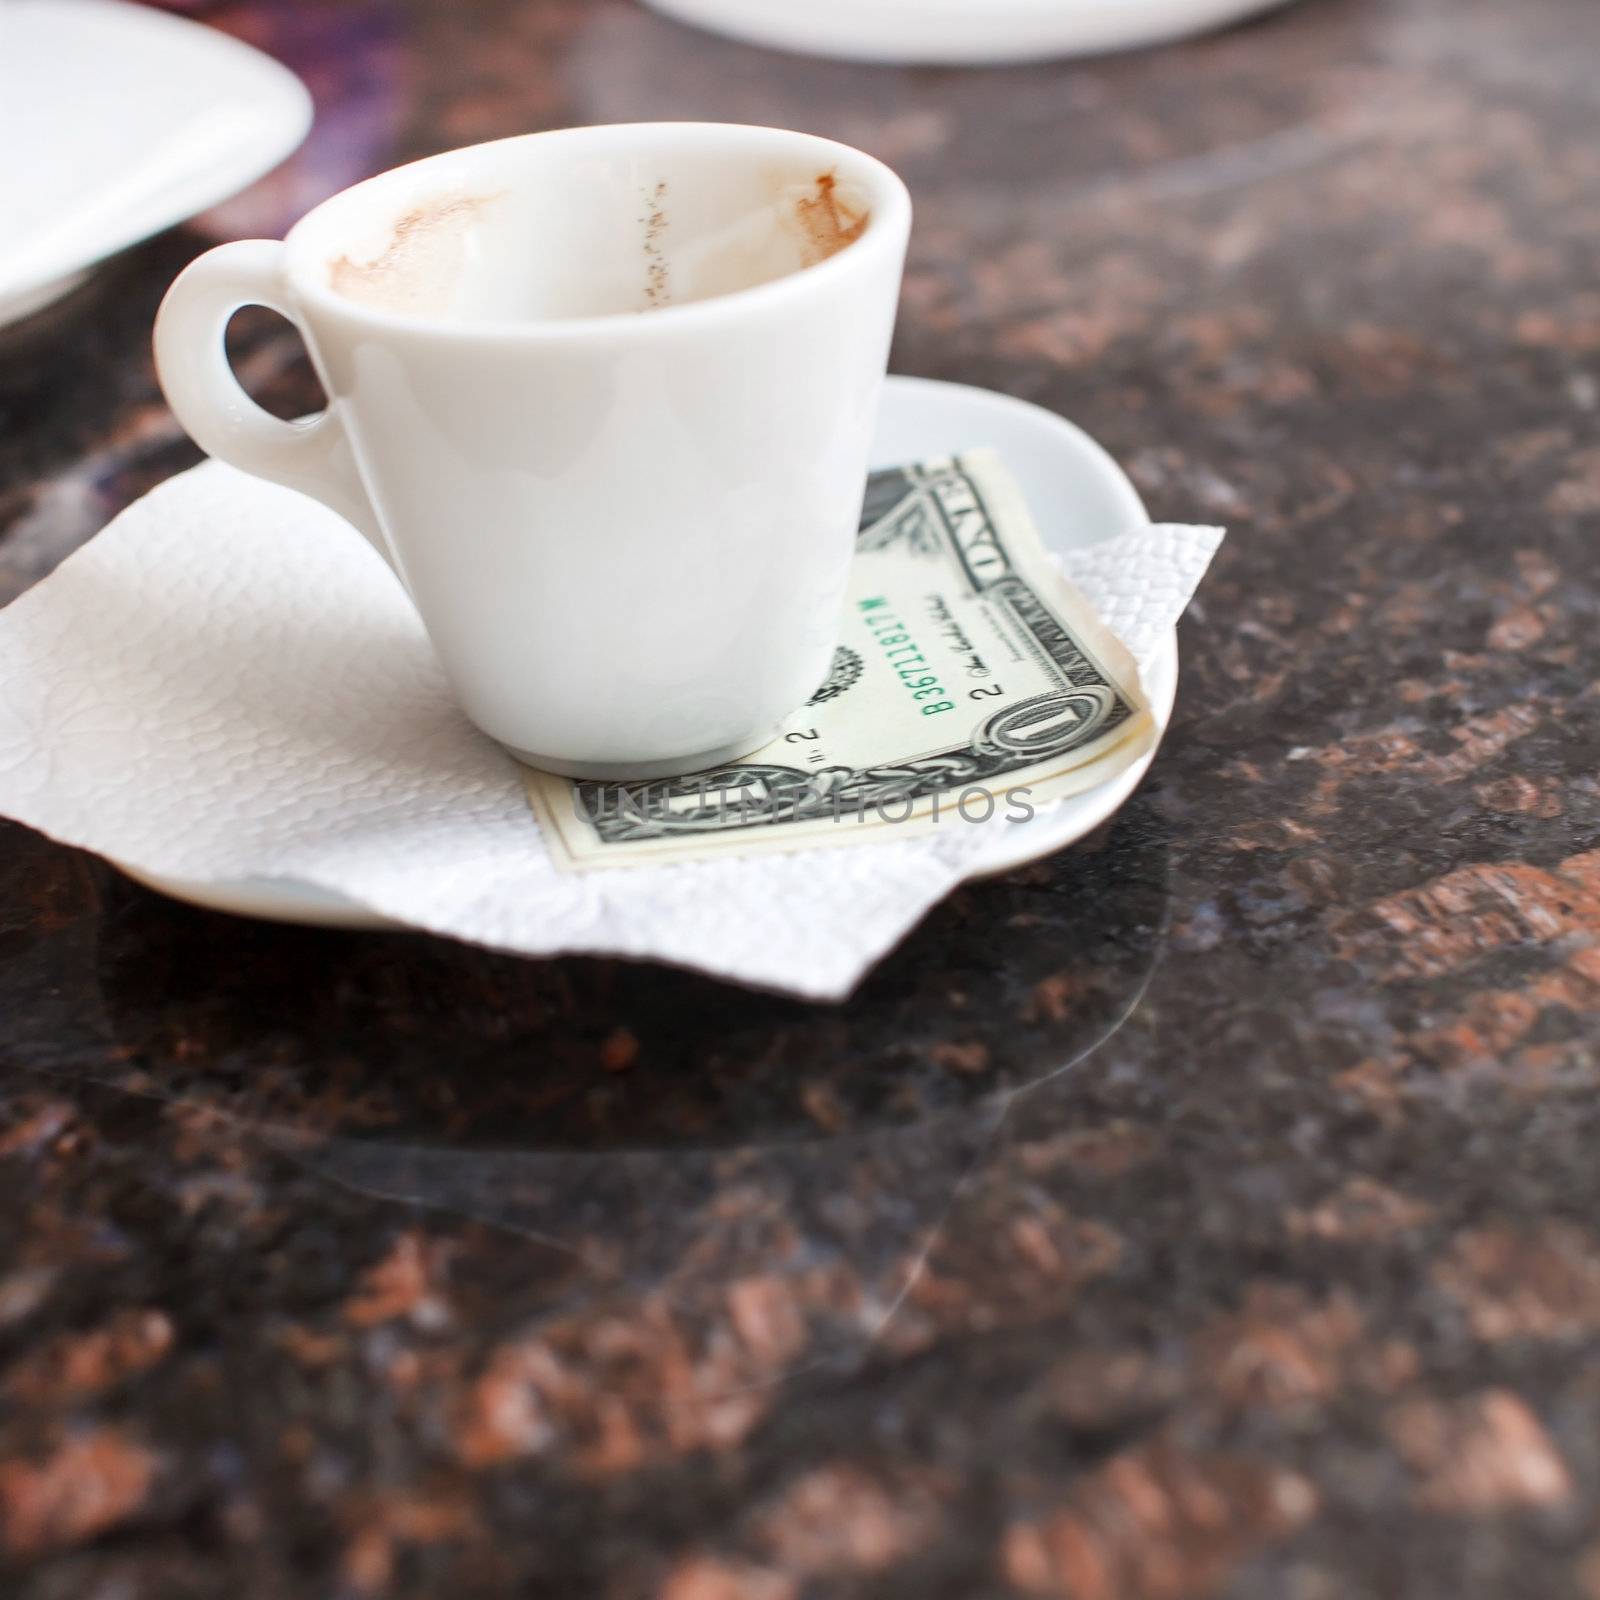 dollar bills under a coffee cup 